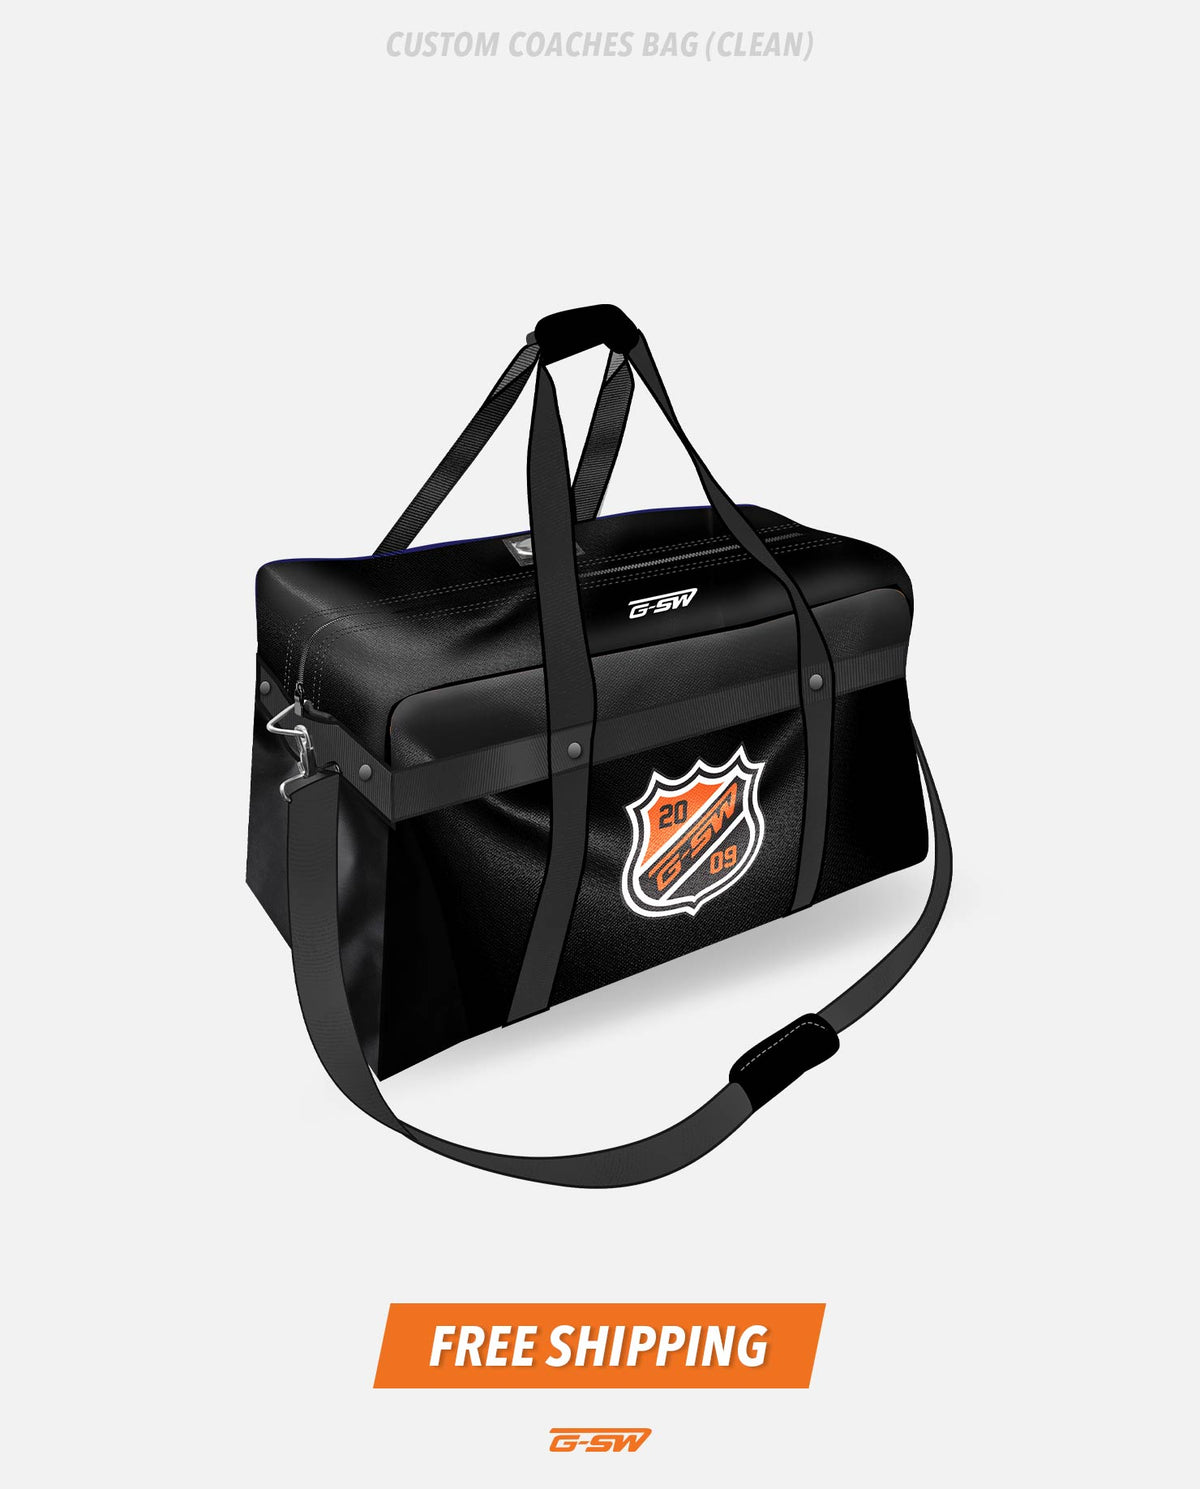 GSW Custom Coaches Bag (Clean)